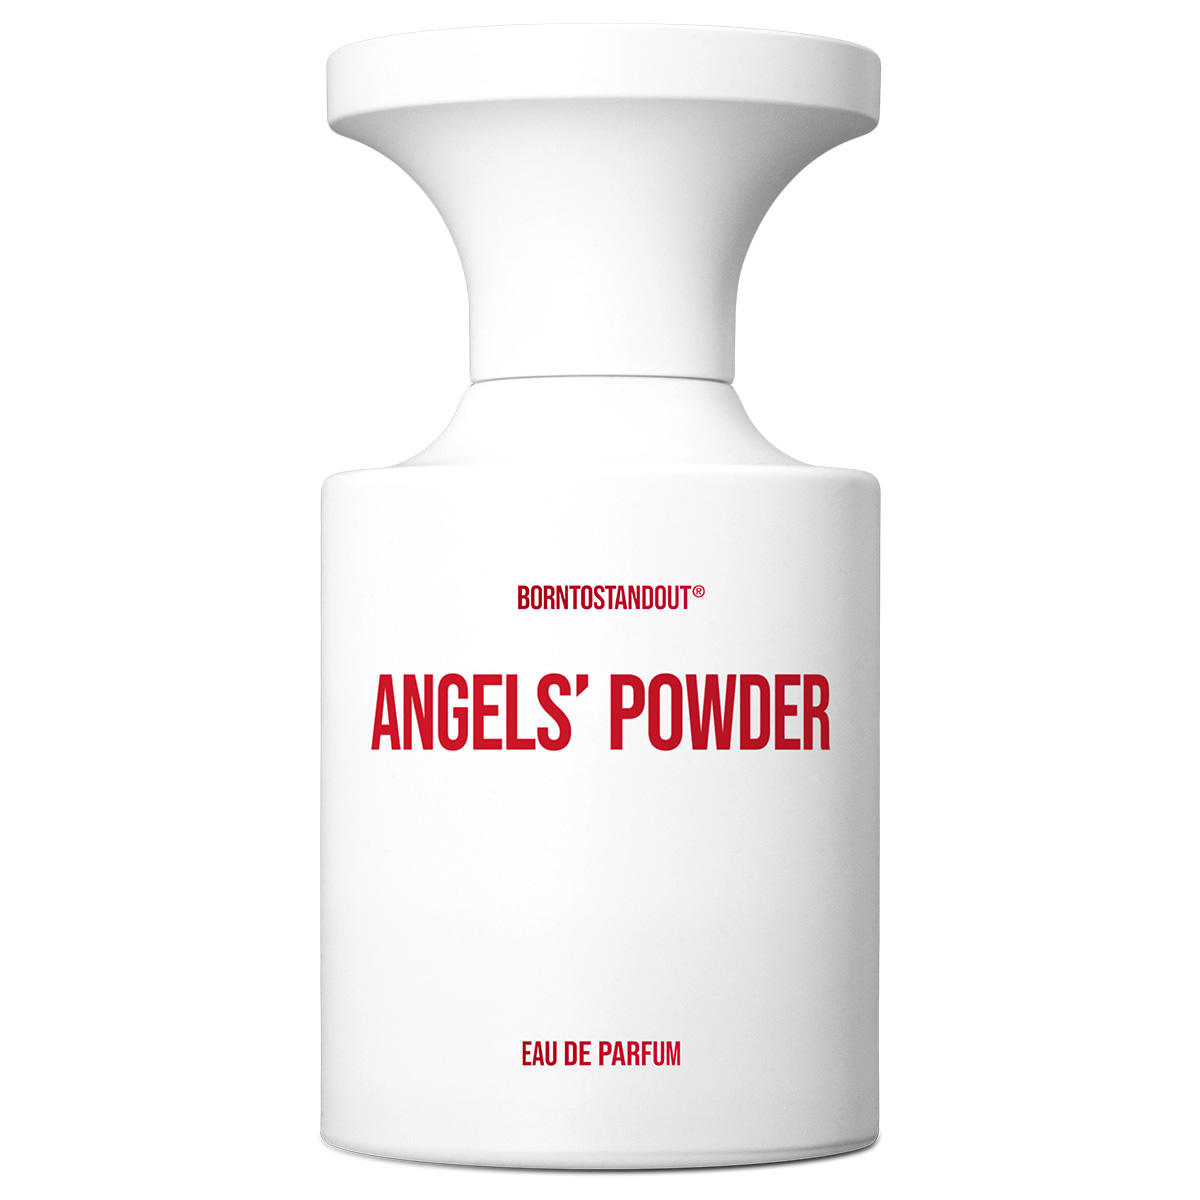 BORNTOSTANDOUT Angels' Powder Eau de Parfum 50 ml - 1